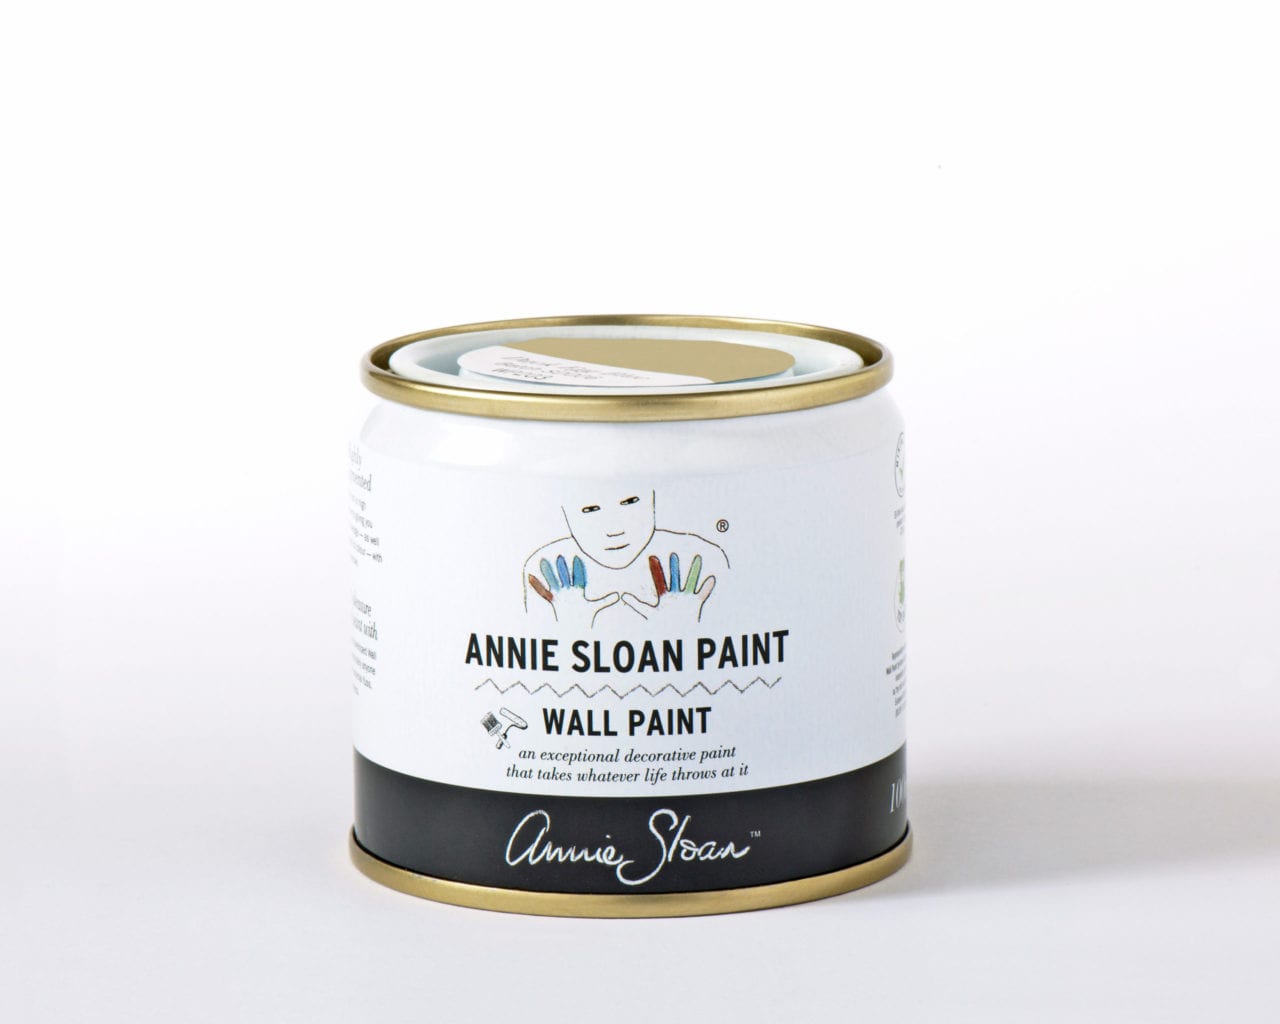 1641469762Versailles-Annie-Sloan-Wall-Paint-100-ml-tin-scaled-1.jpg